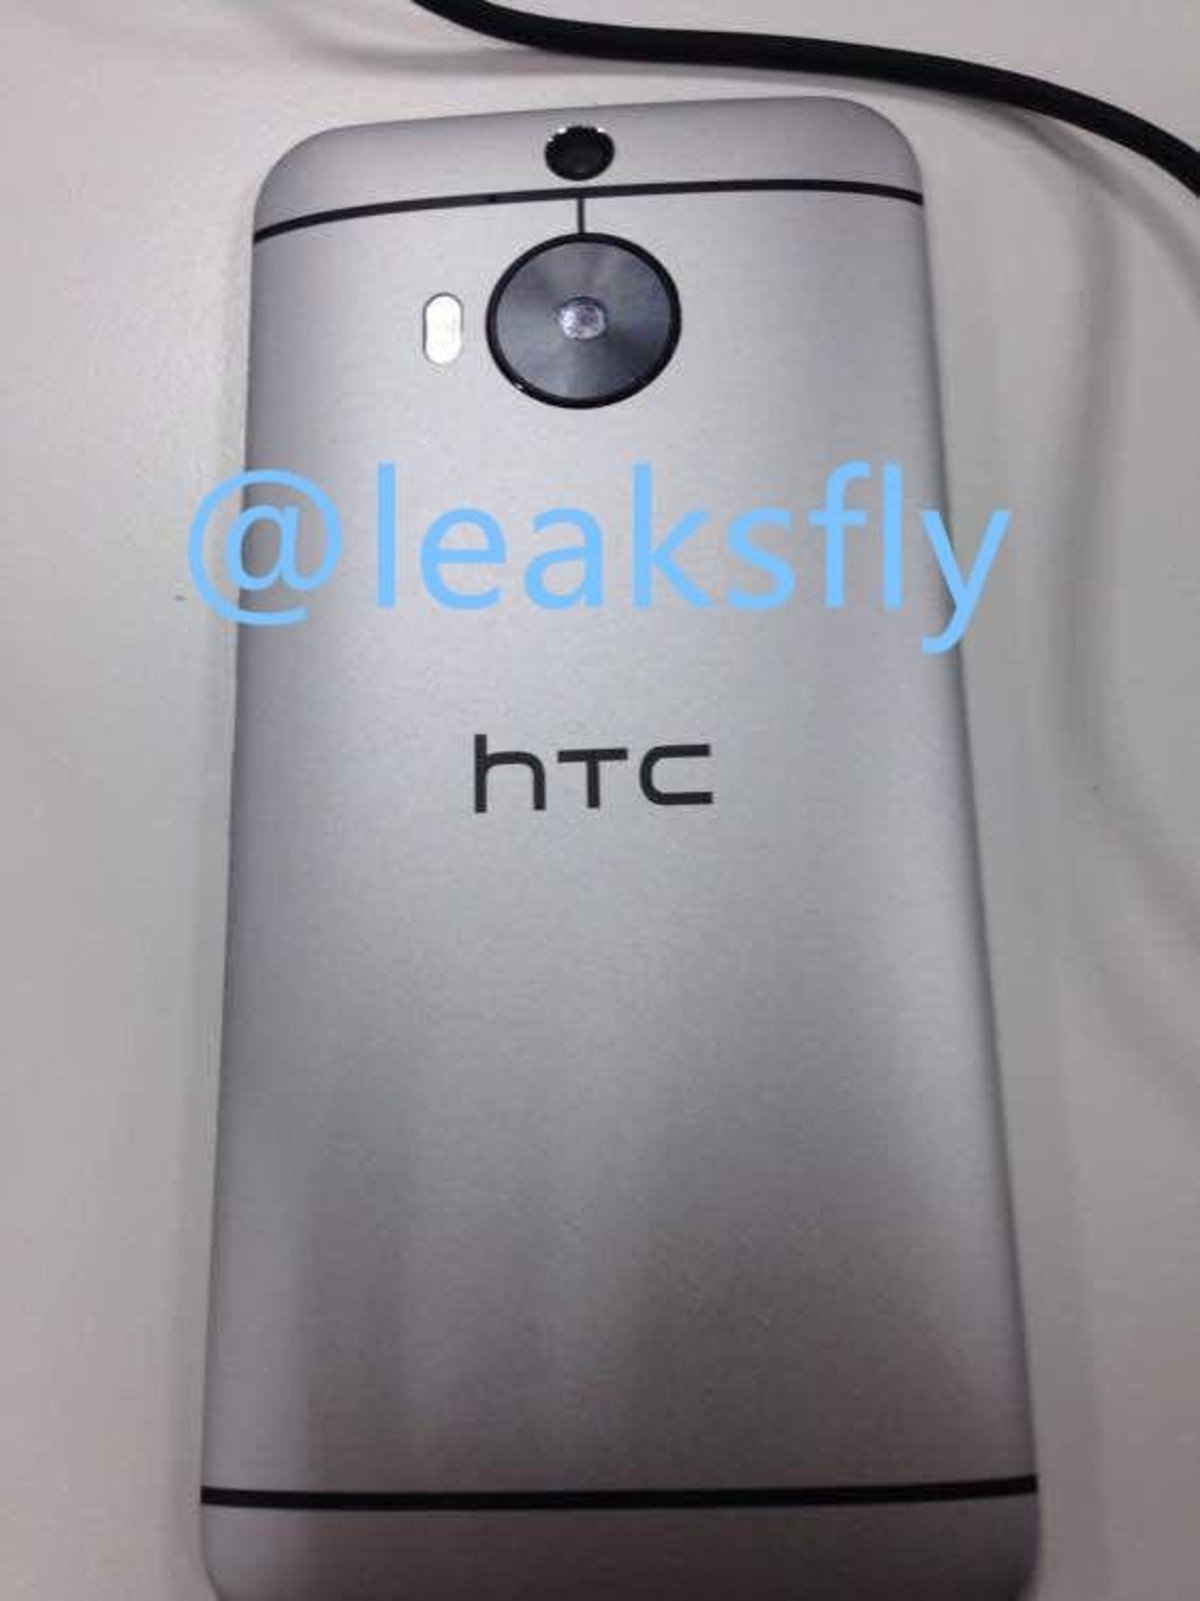 Apariencia y especificaciones del HTC One M9 Plus desveladas